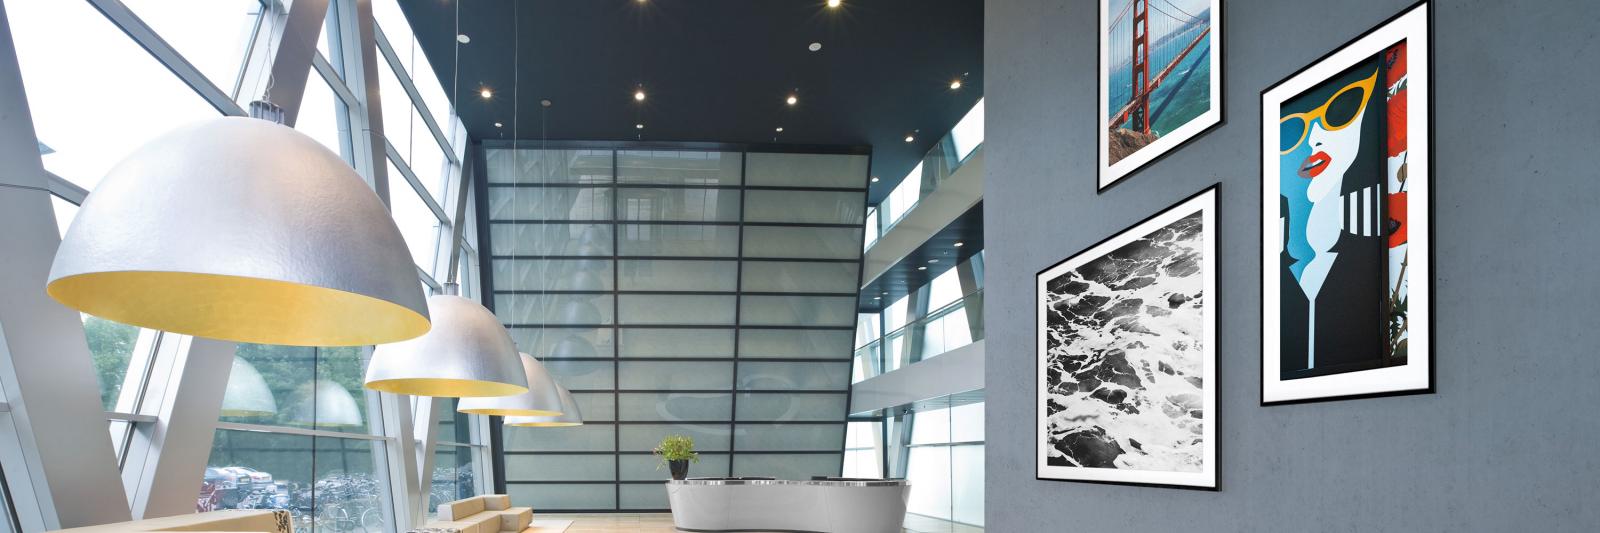 Beschichtete und selbstklebende Fotopapiere - moderne Eingangshalle mit Kunstdrucken auf einer grauen Wand